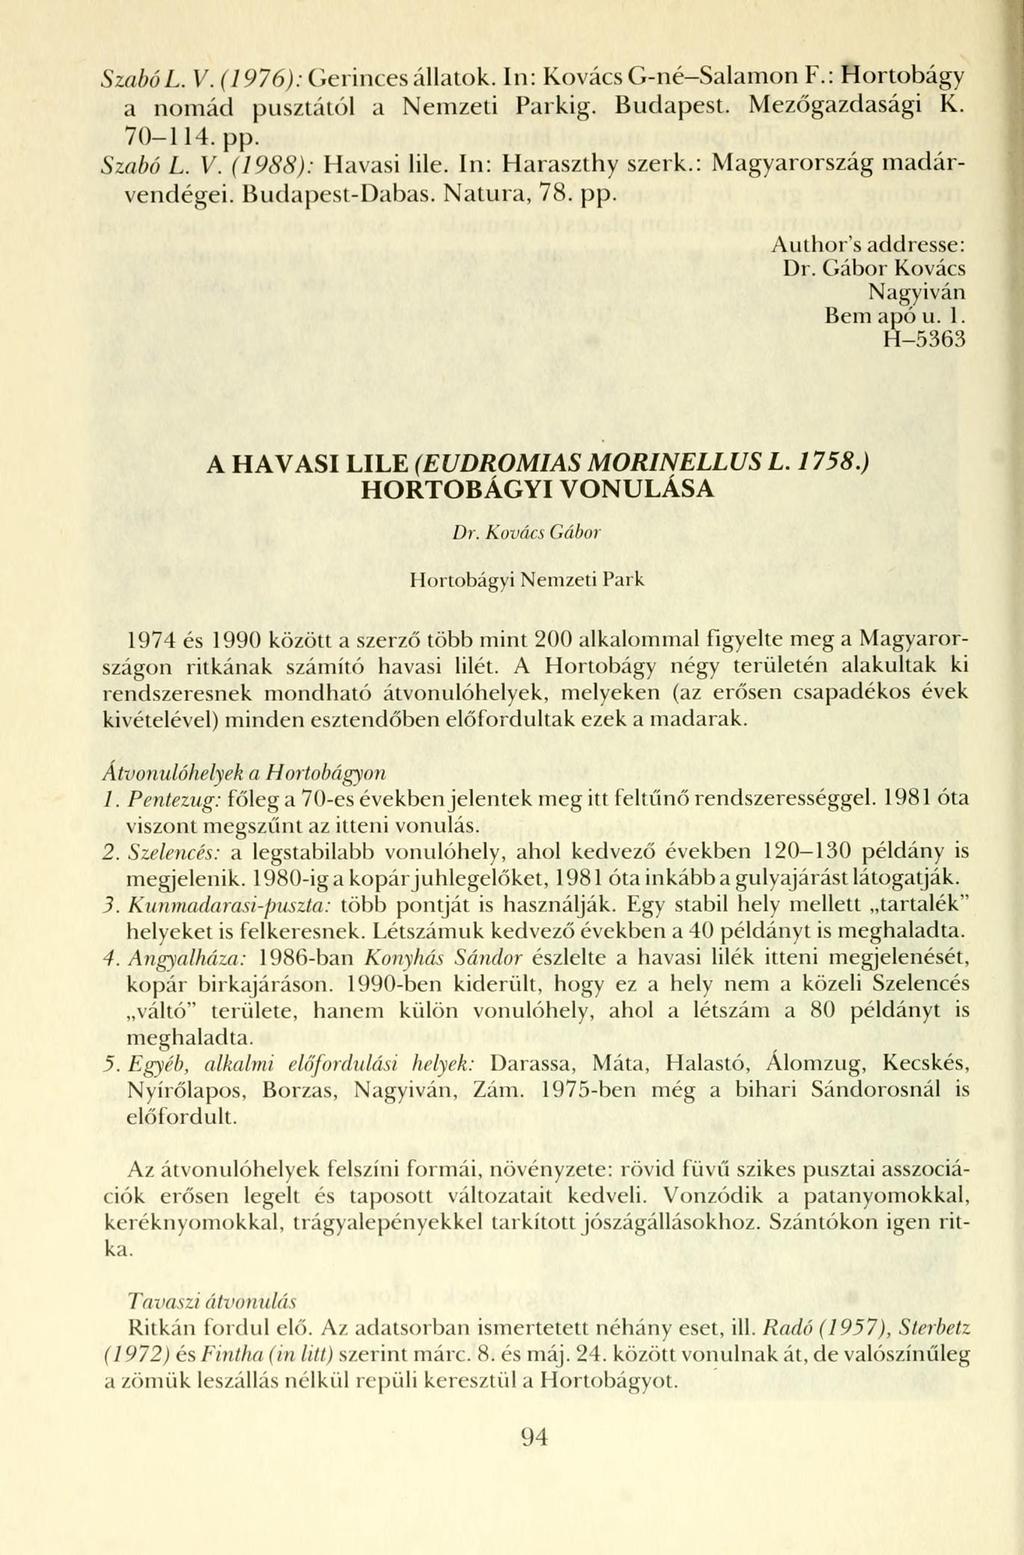 SzabóL. V. (1976): Gerinces állatok. In: Kovács G-né-Salamon F.: Hortobágy a nomád pusztától a Nemzeti Parkig. Budapest. Mezőgazdasági K. 70-114. pp. Szabó L. V. (1988): Havasi lile.